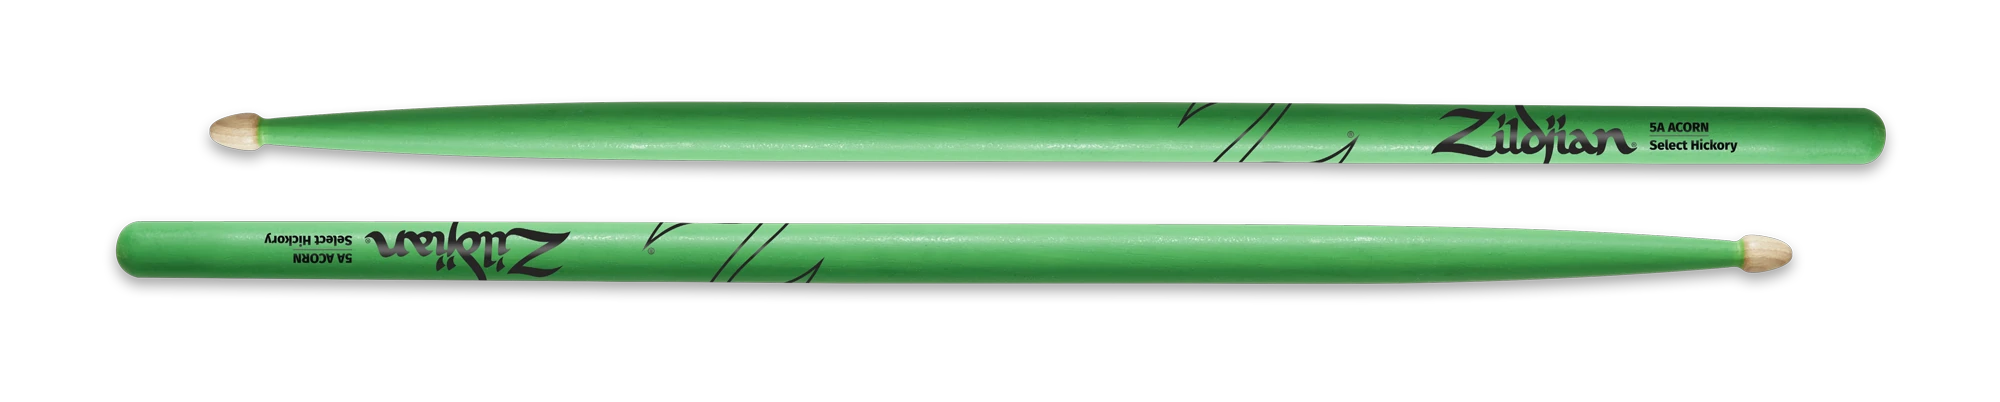 Zildjian Sticks Holzkopf 5A Neon Grün Acorn T